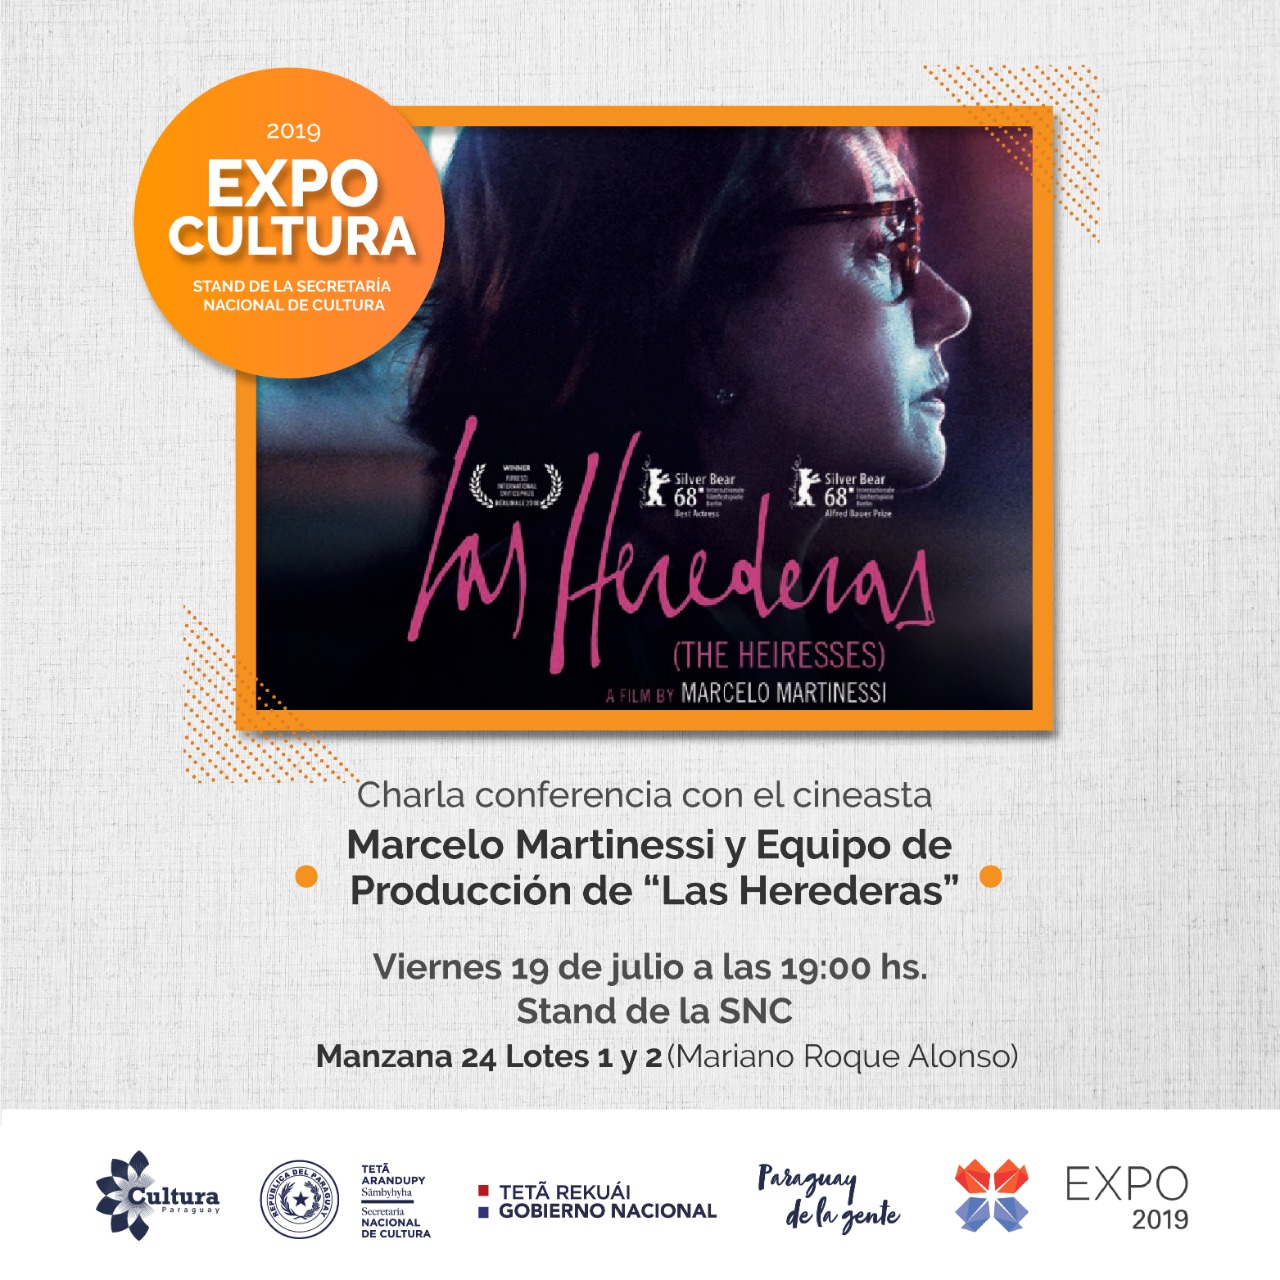 Marcelo Martinessi y equipo de producción de Las Herederas brindarán charla en Stand de la SNC en la Expo imagen